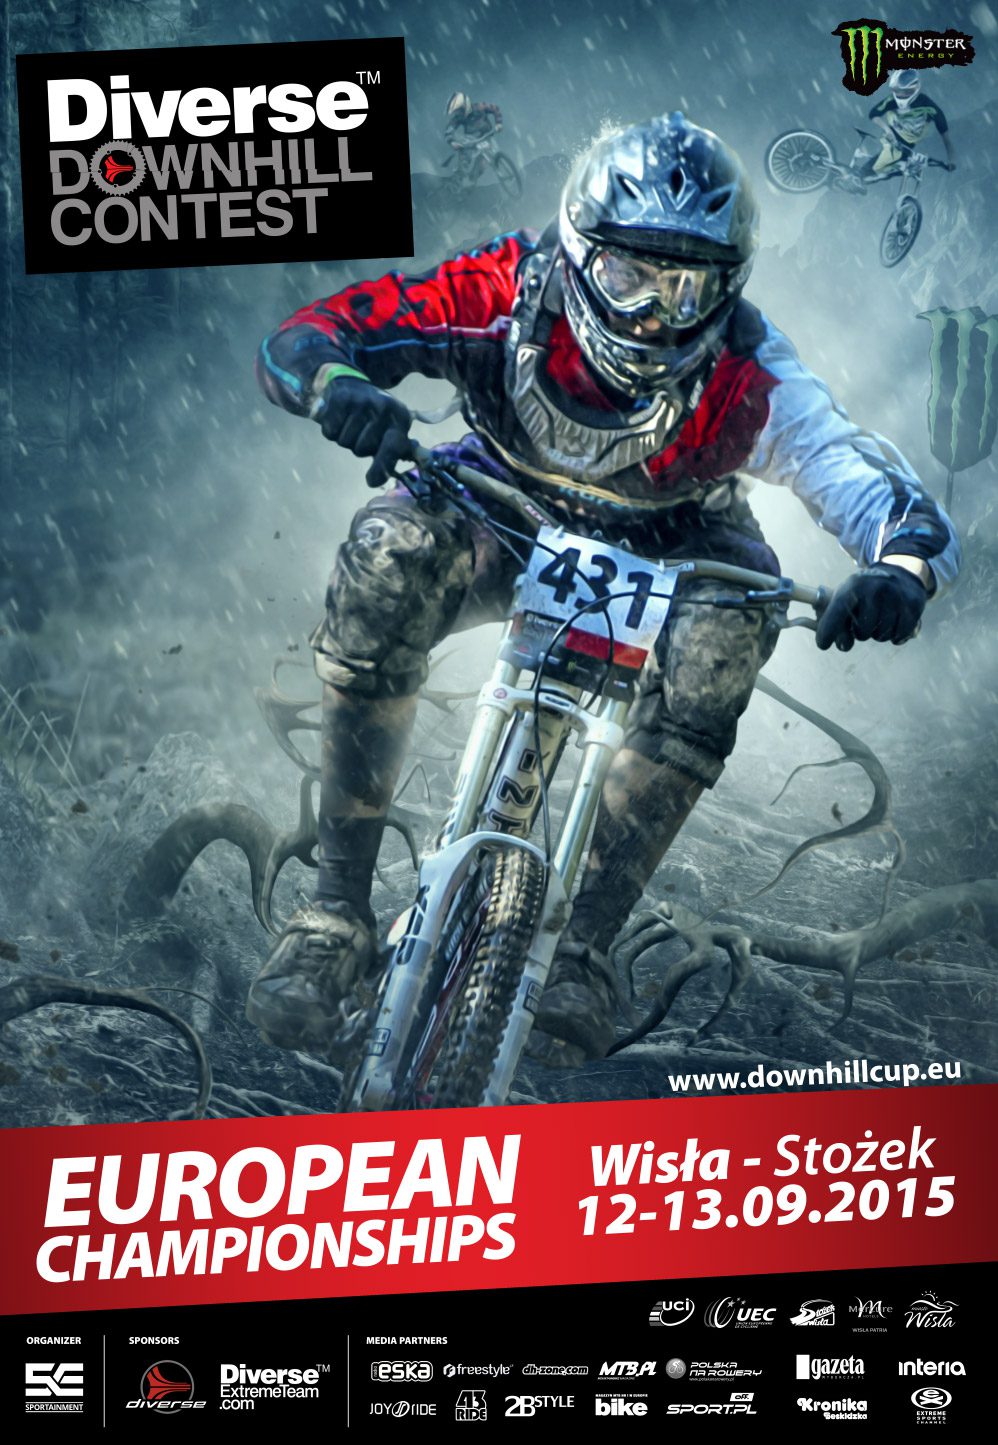 Ruszyły zapisy na Mistrzostwa Europy DH - Diverse Downhill Contest 2015